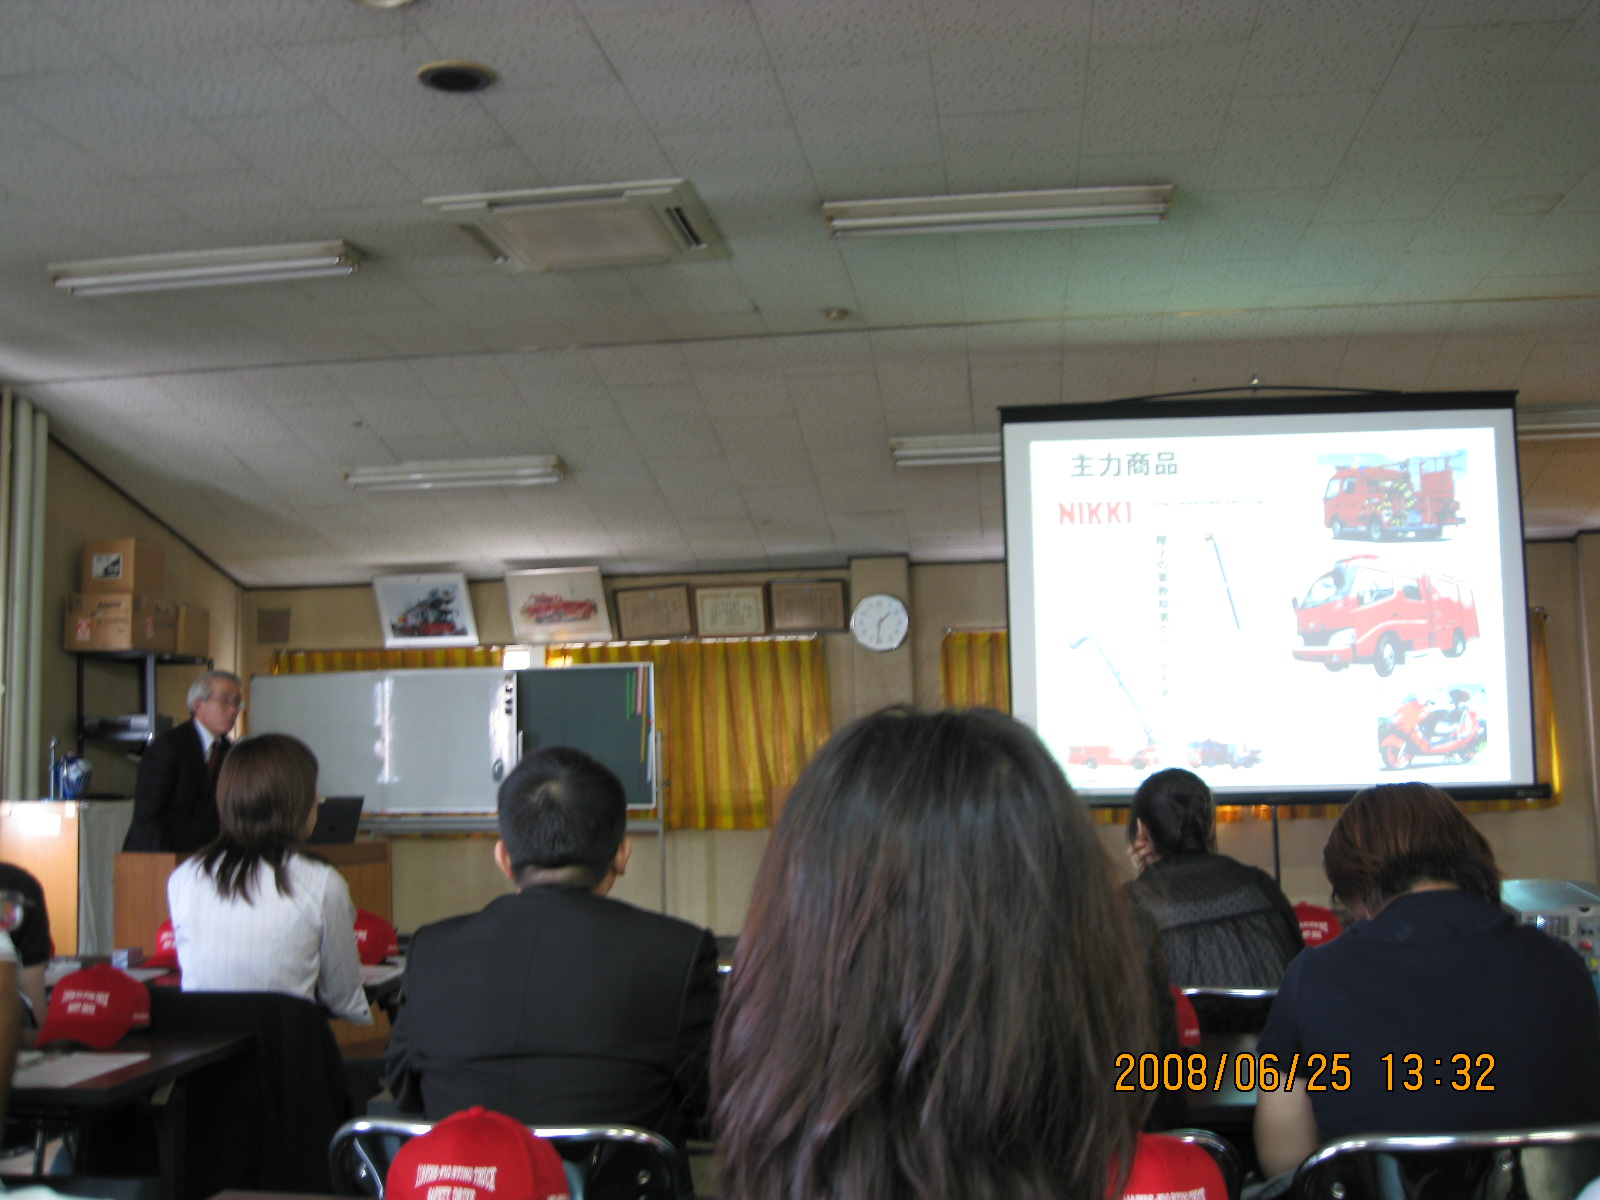 スライドで消防車両について学ぶ